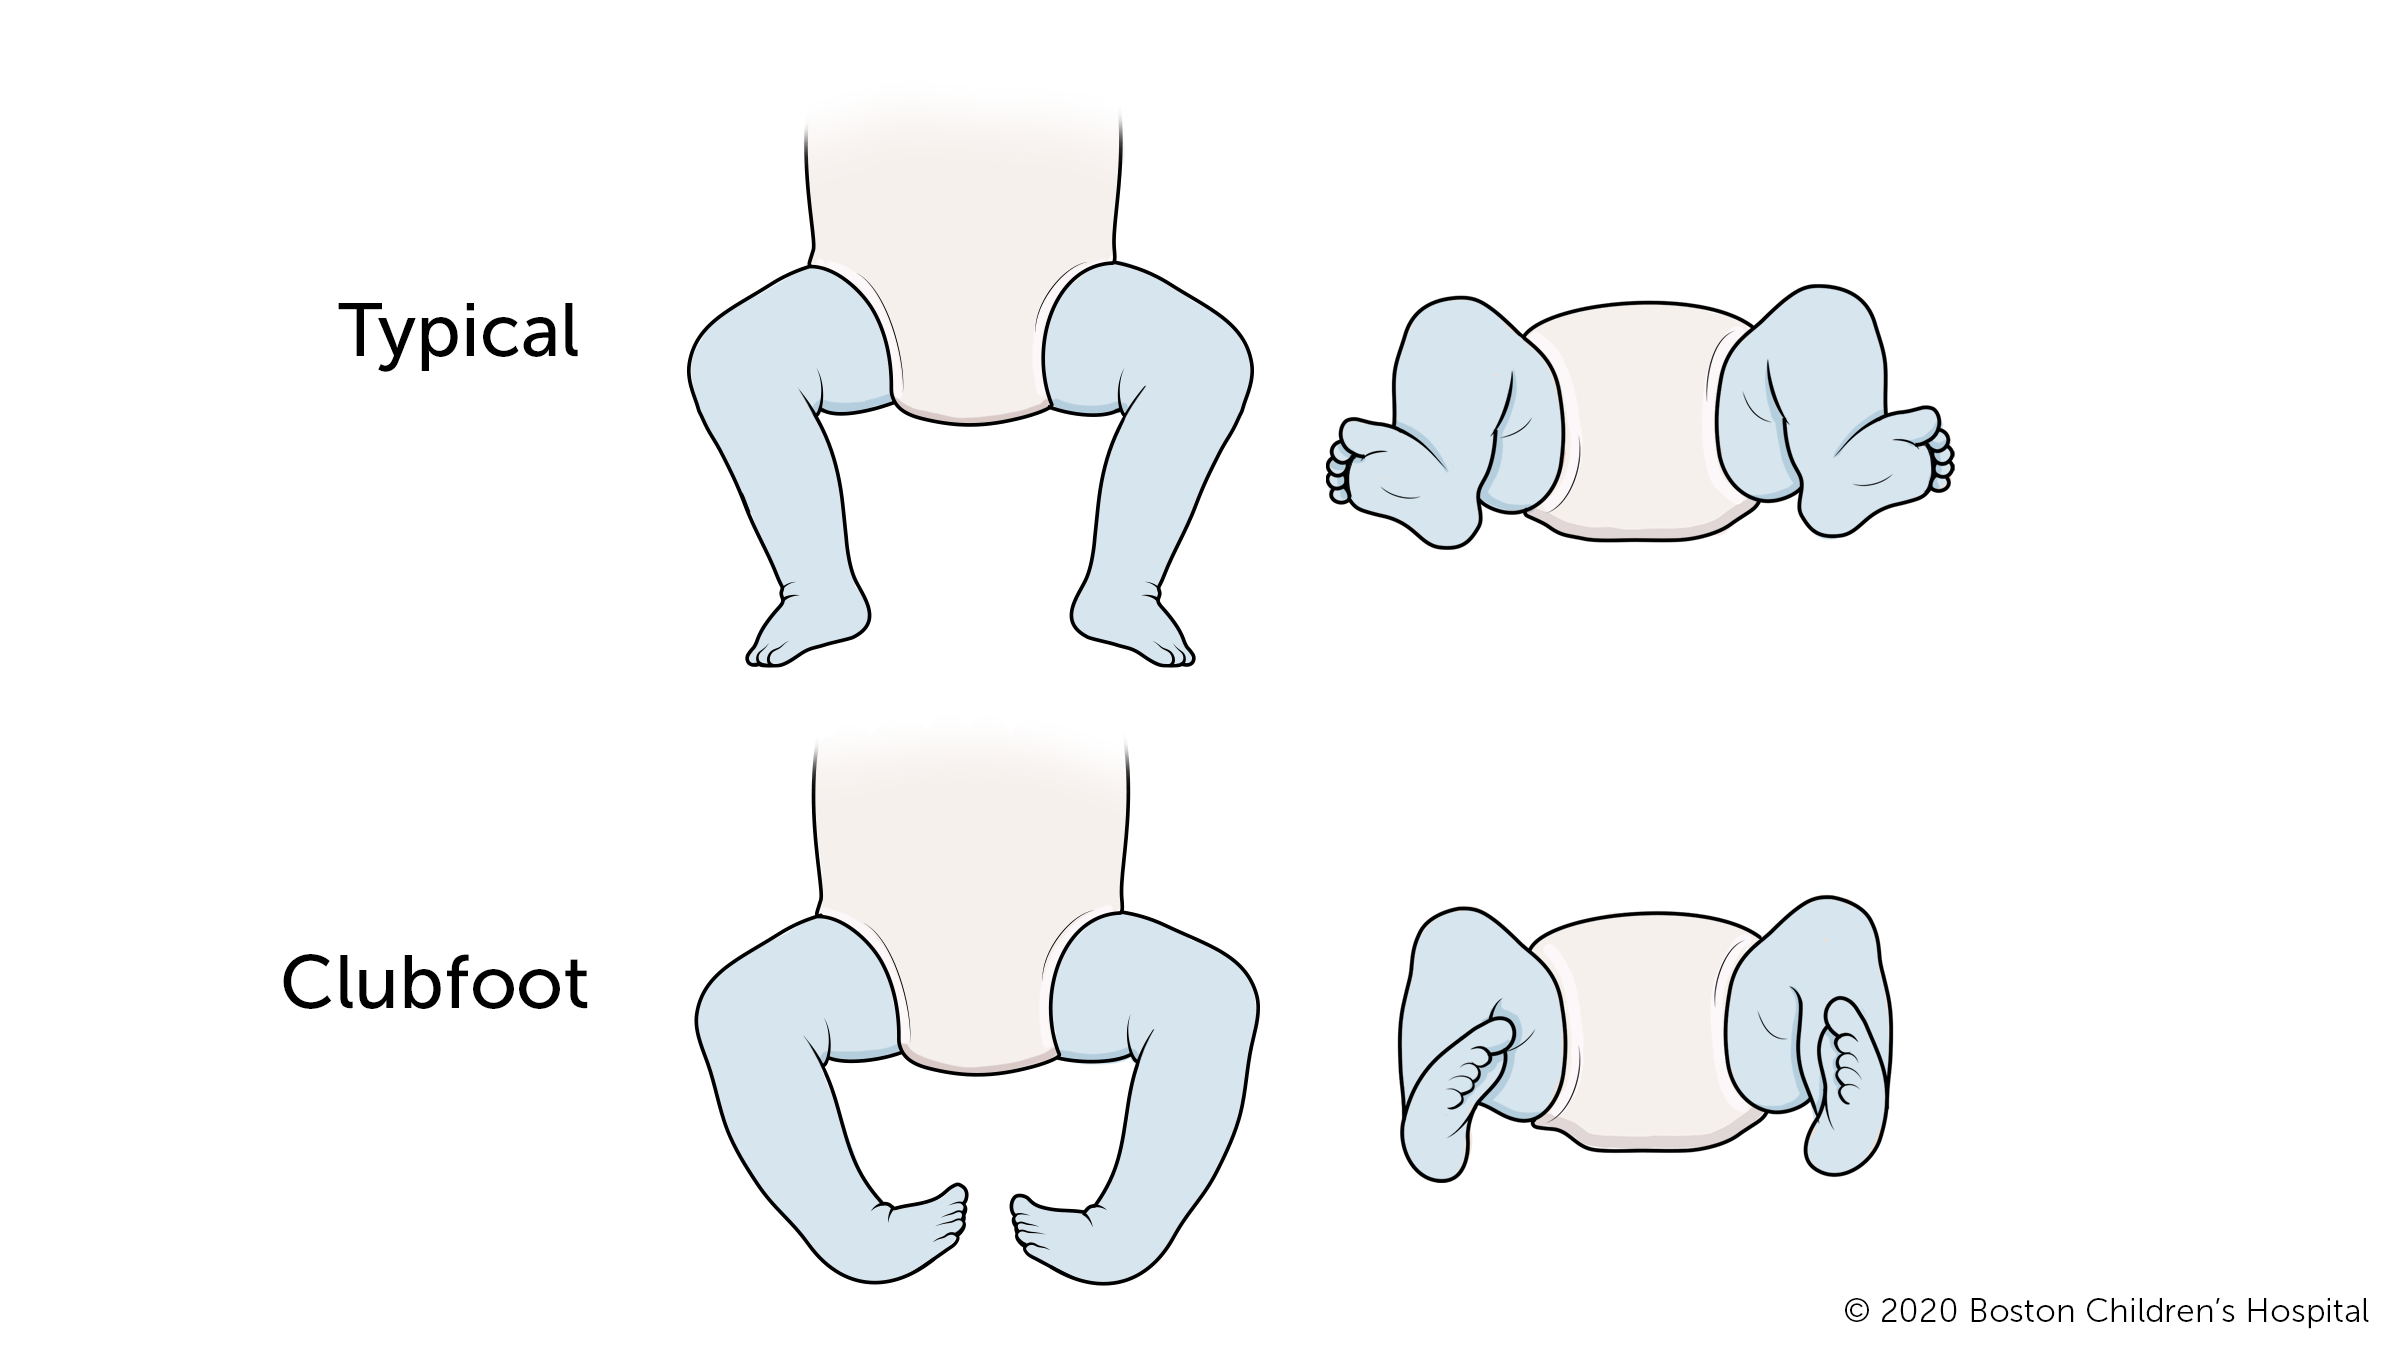 畸形足是指受影响的脚的前半部分向内转动，脚后跟向下。